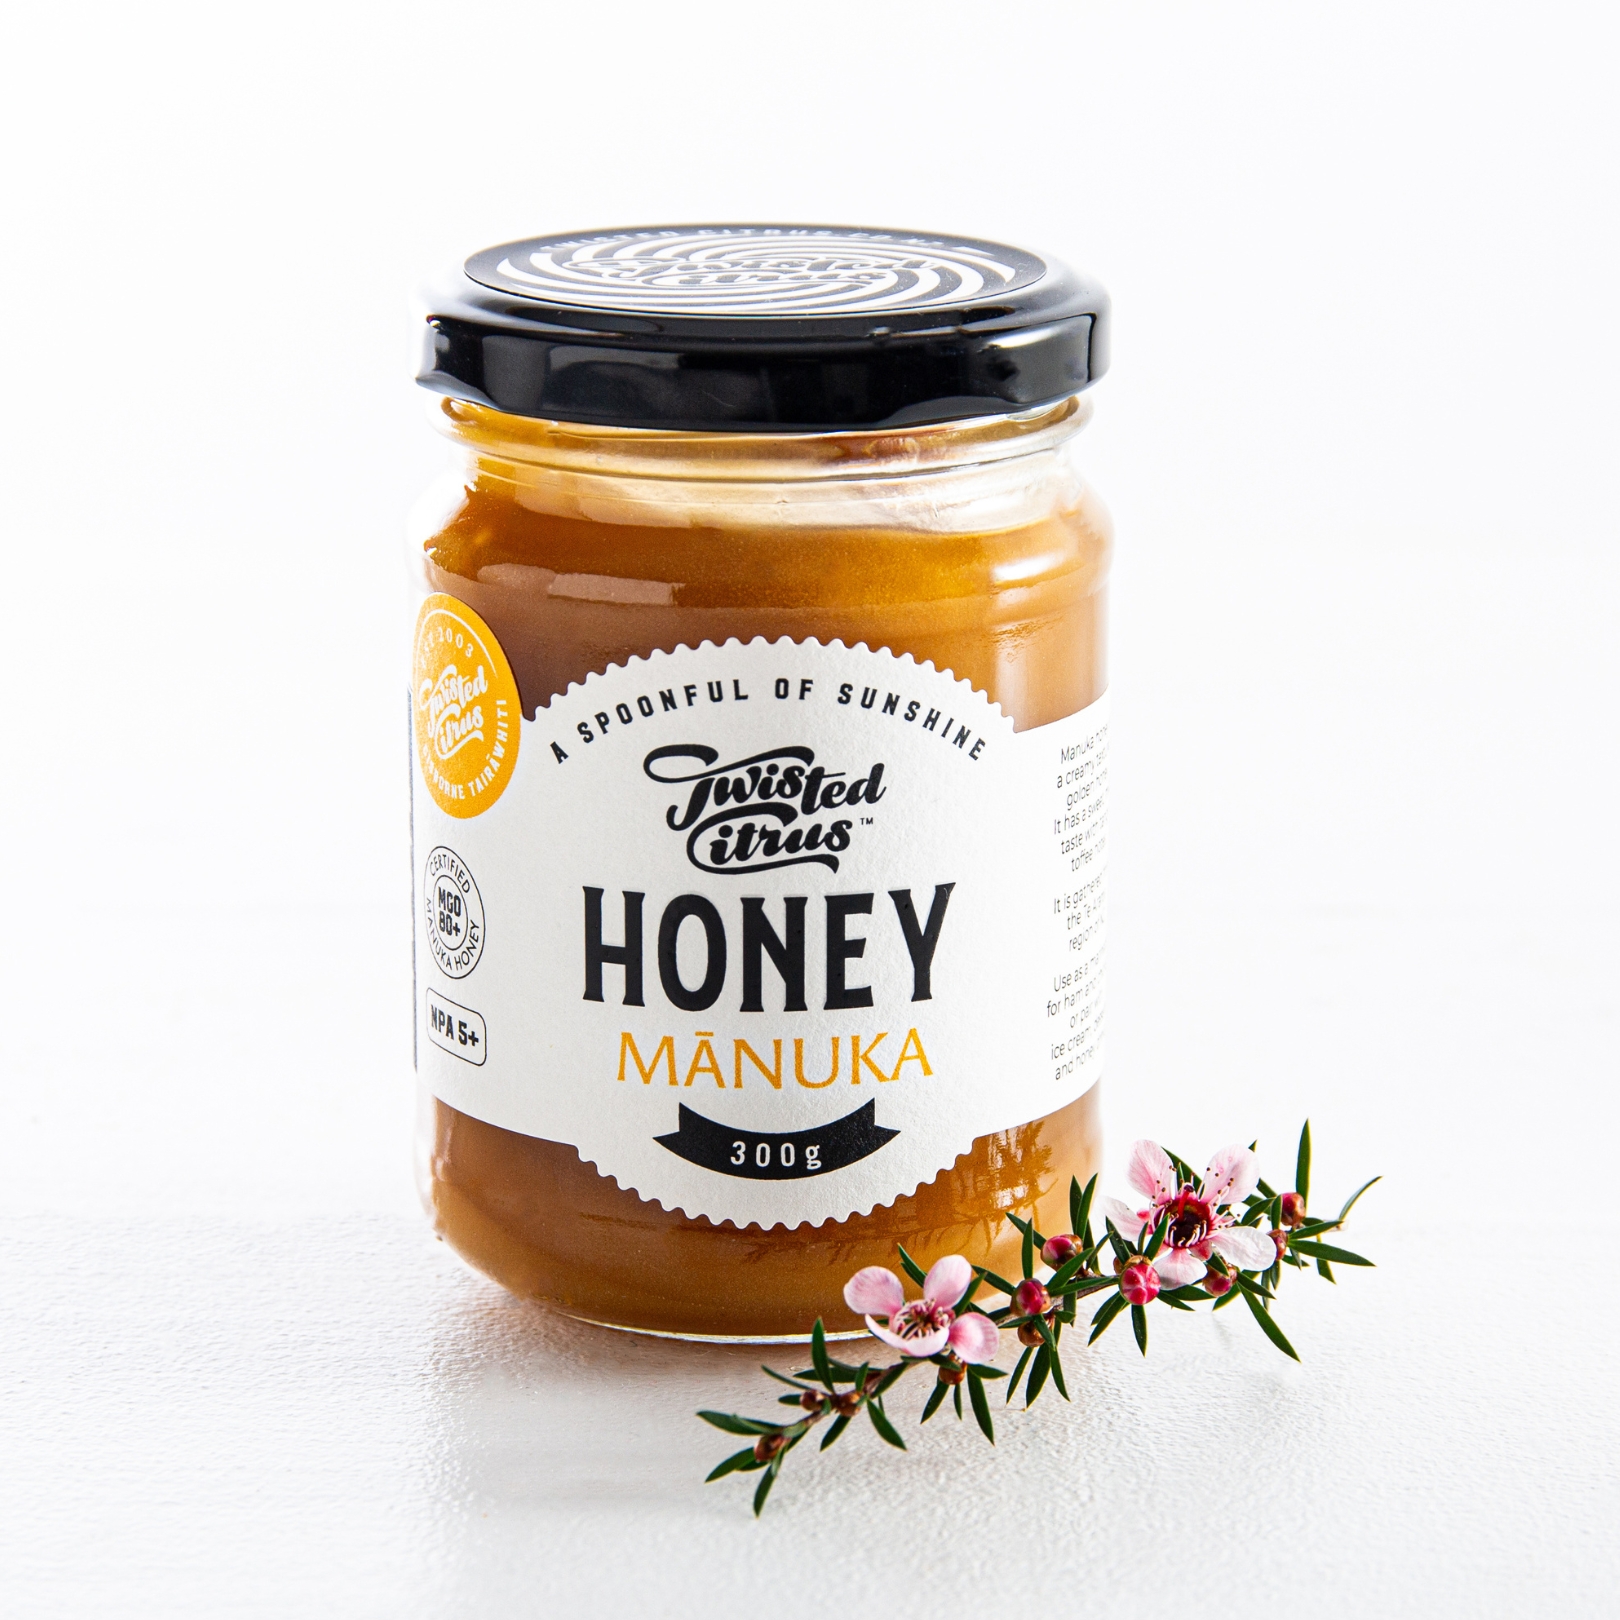 Buy Manuka Honey Online NZ